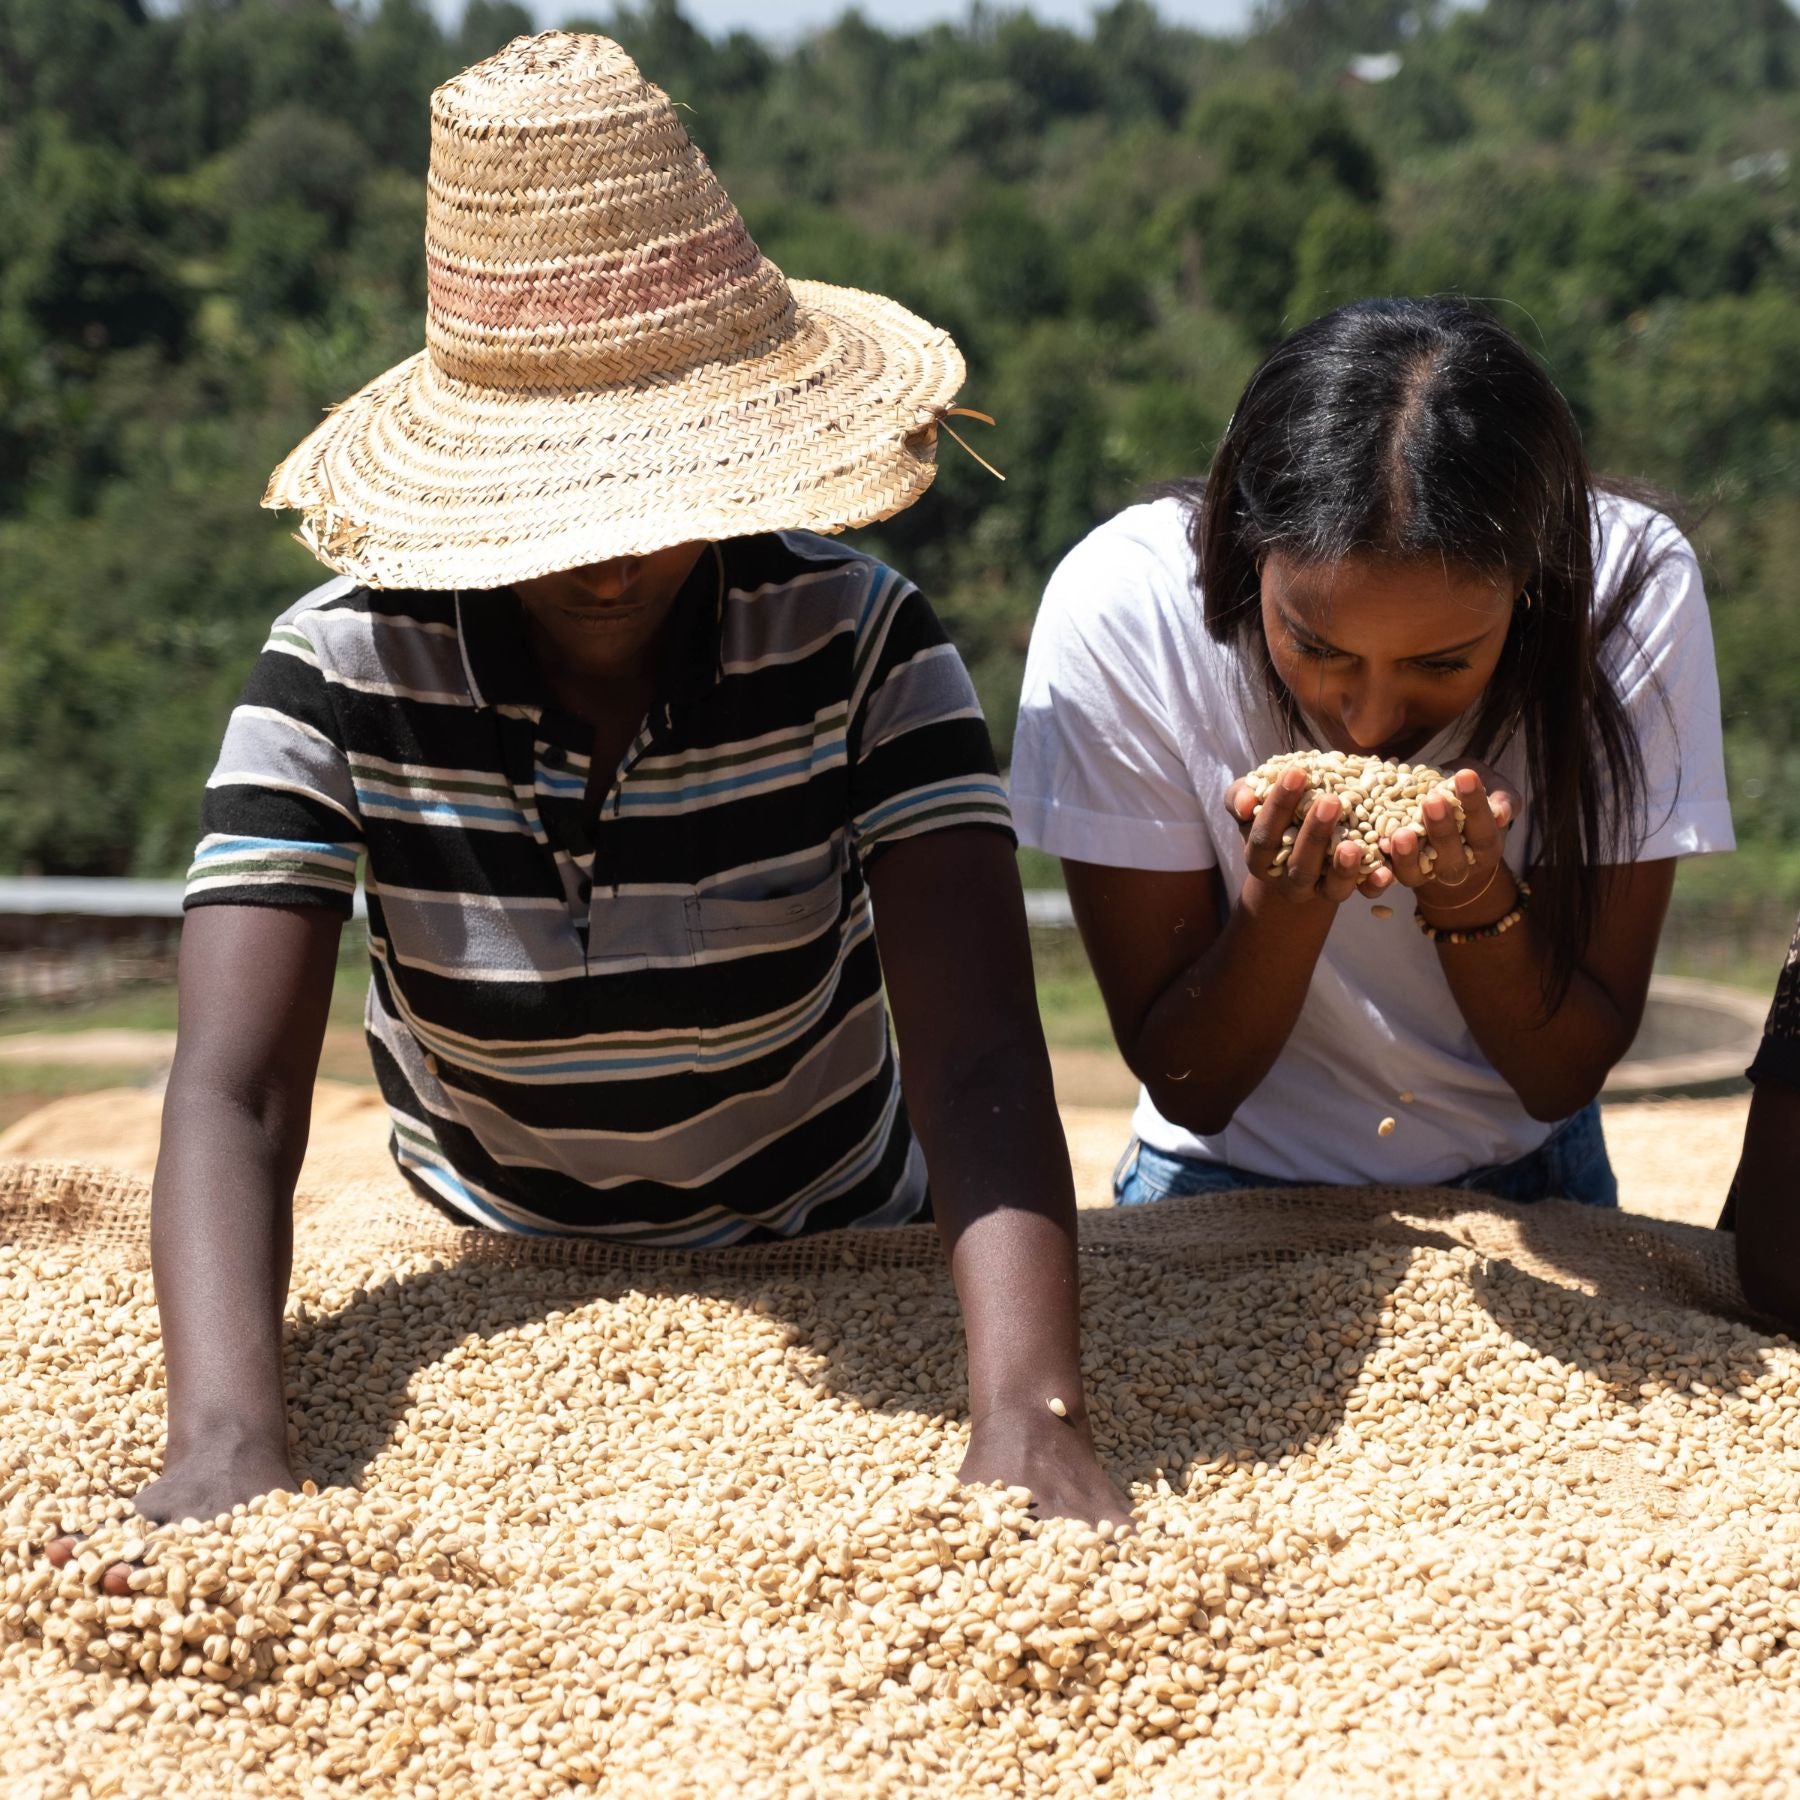 Gründerinnen Sali und Sara auf Kaffeefeld / nurucoffee: Bio-Kaffee mit social impact aus fairem Handel und nachhaltig produziert in Äthiopien